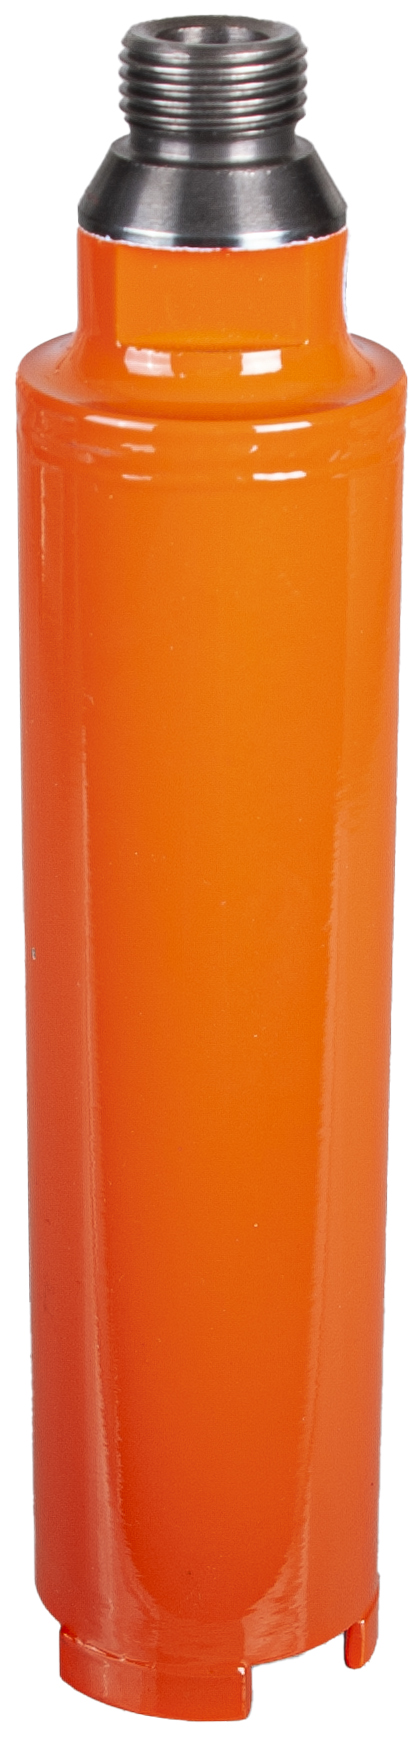 DIAREX Hohlbohrer Helix Orange ø 45 mm | Bohrtiefe 150 mm